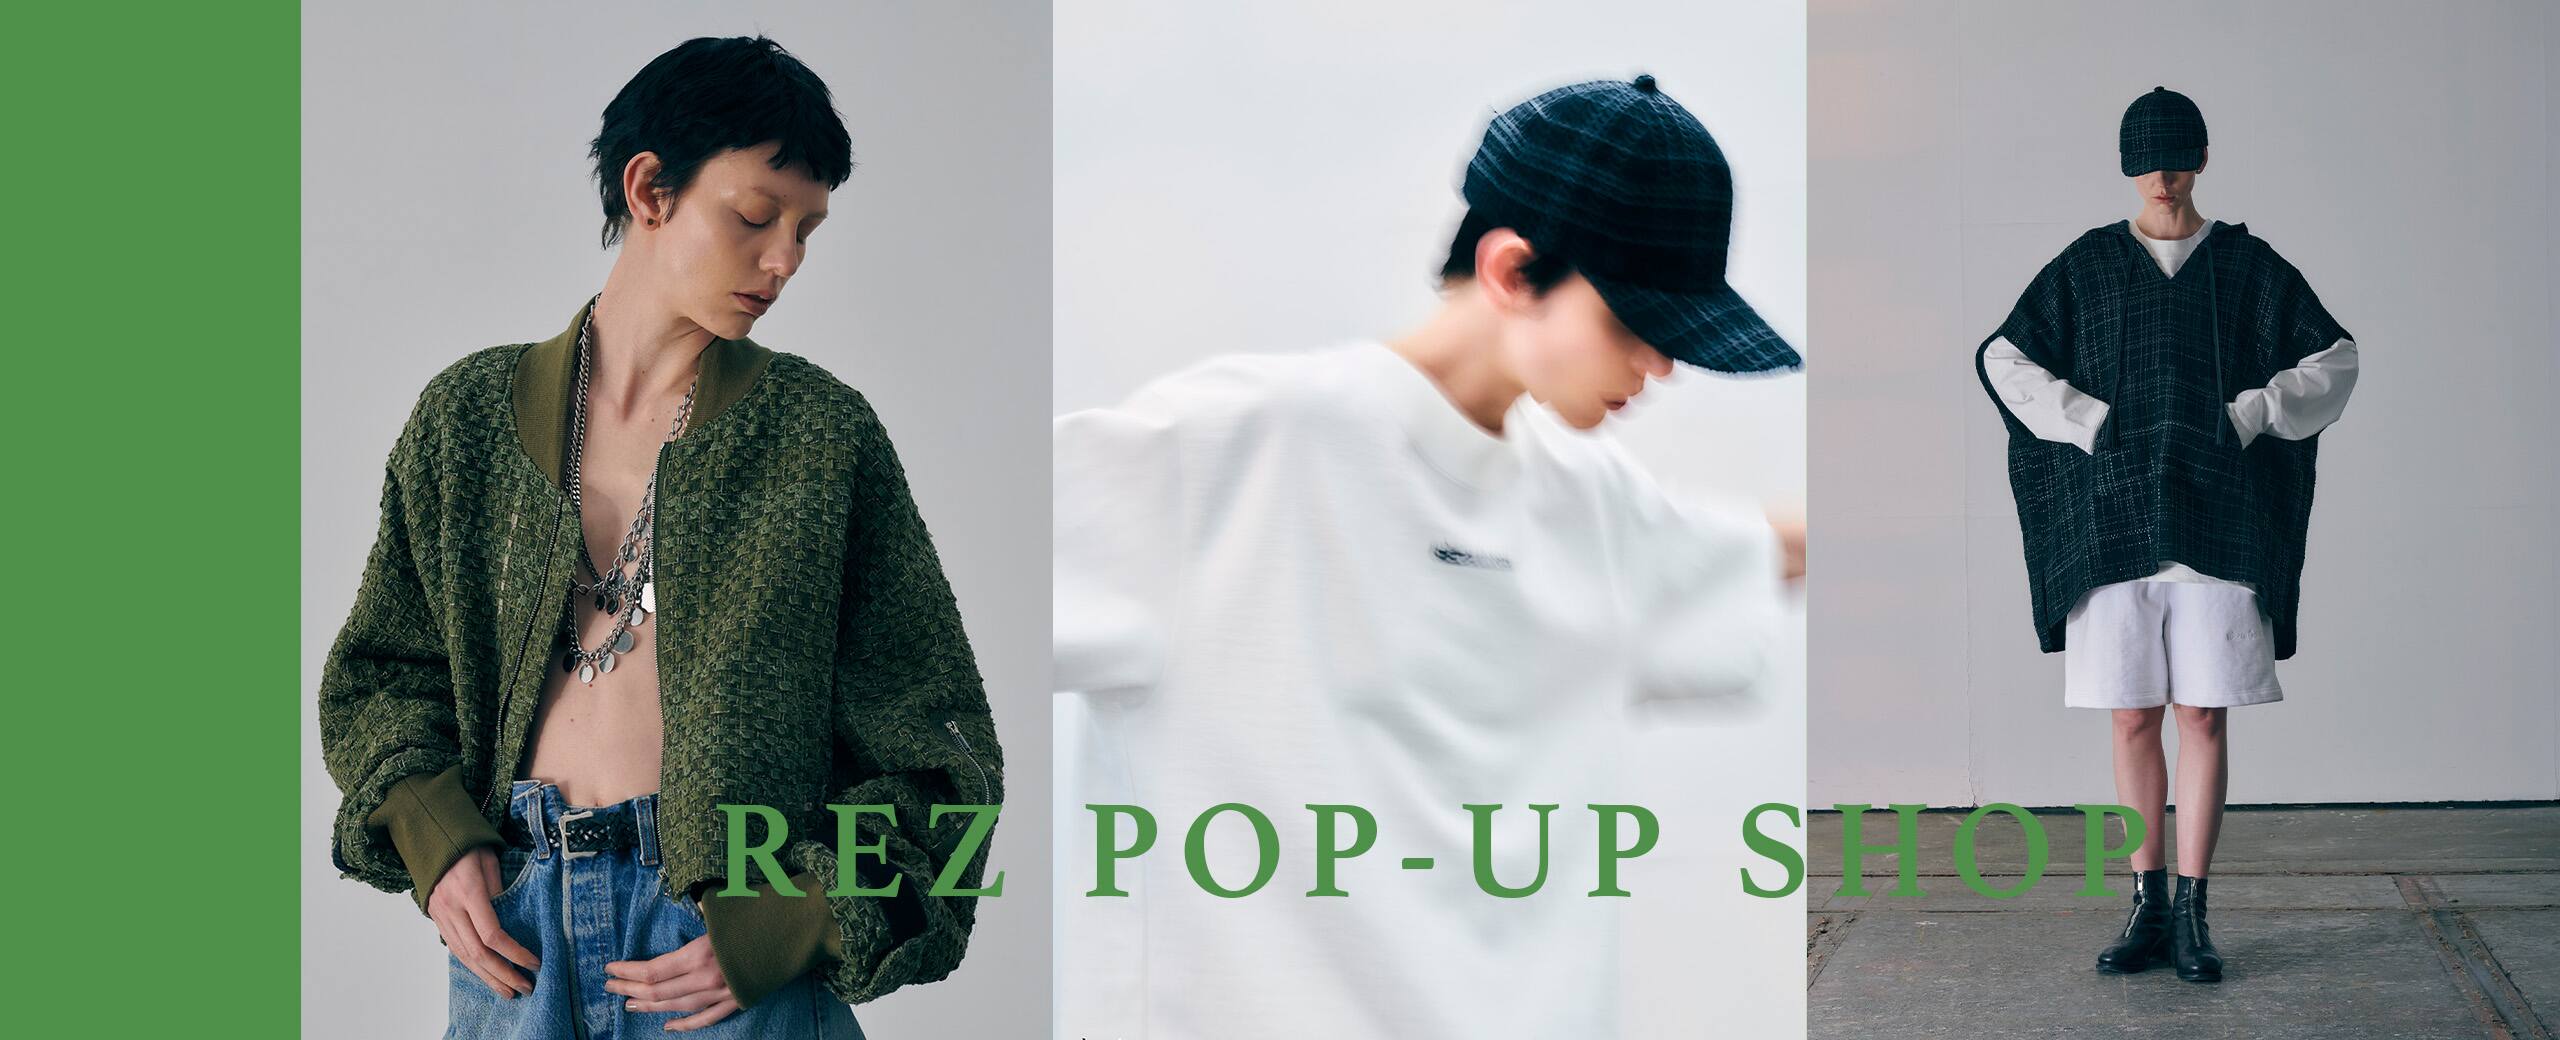 "REZ 1st Collection | POP-UP SHOP"